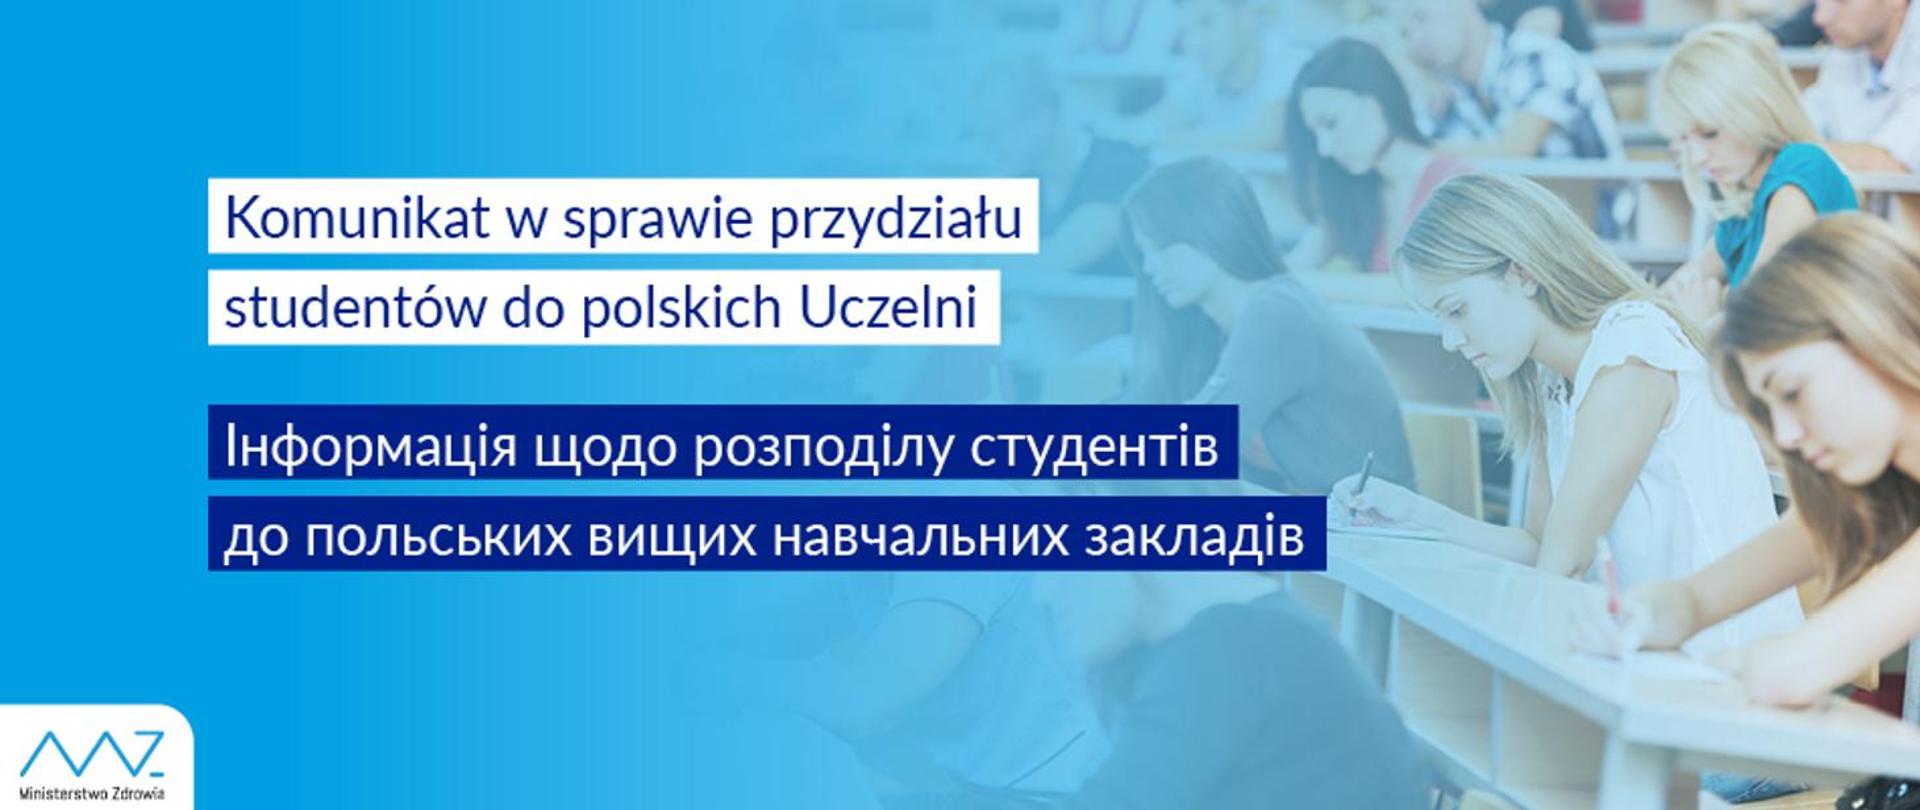 Komunikat w sprawie przydziału studentów do polskich Uczelni